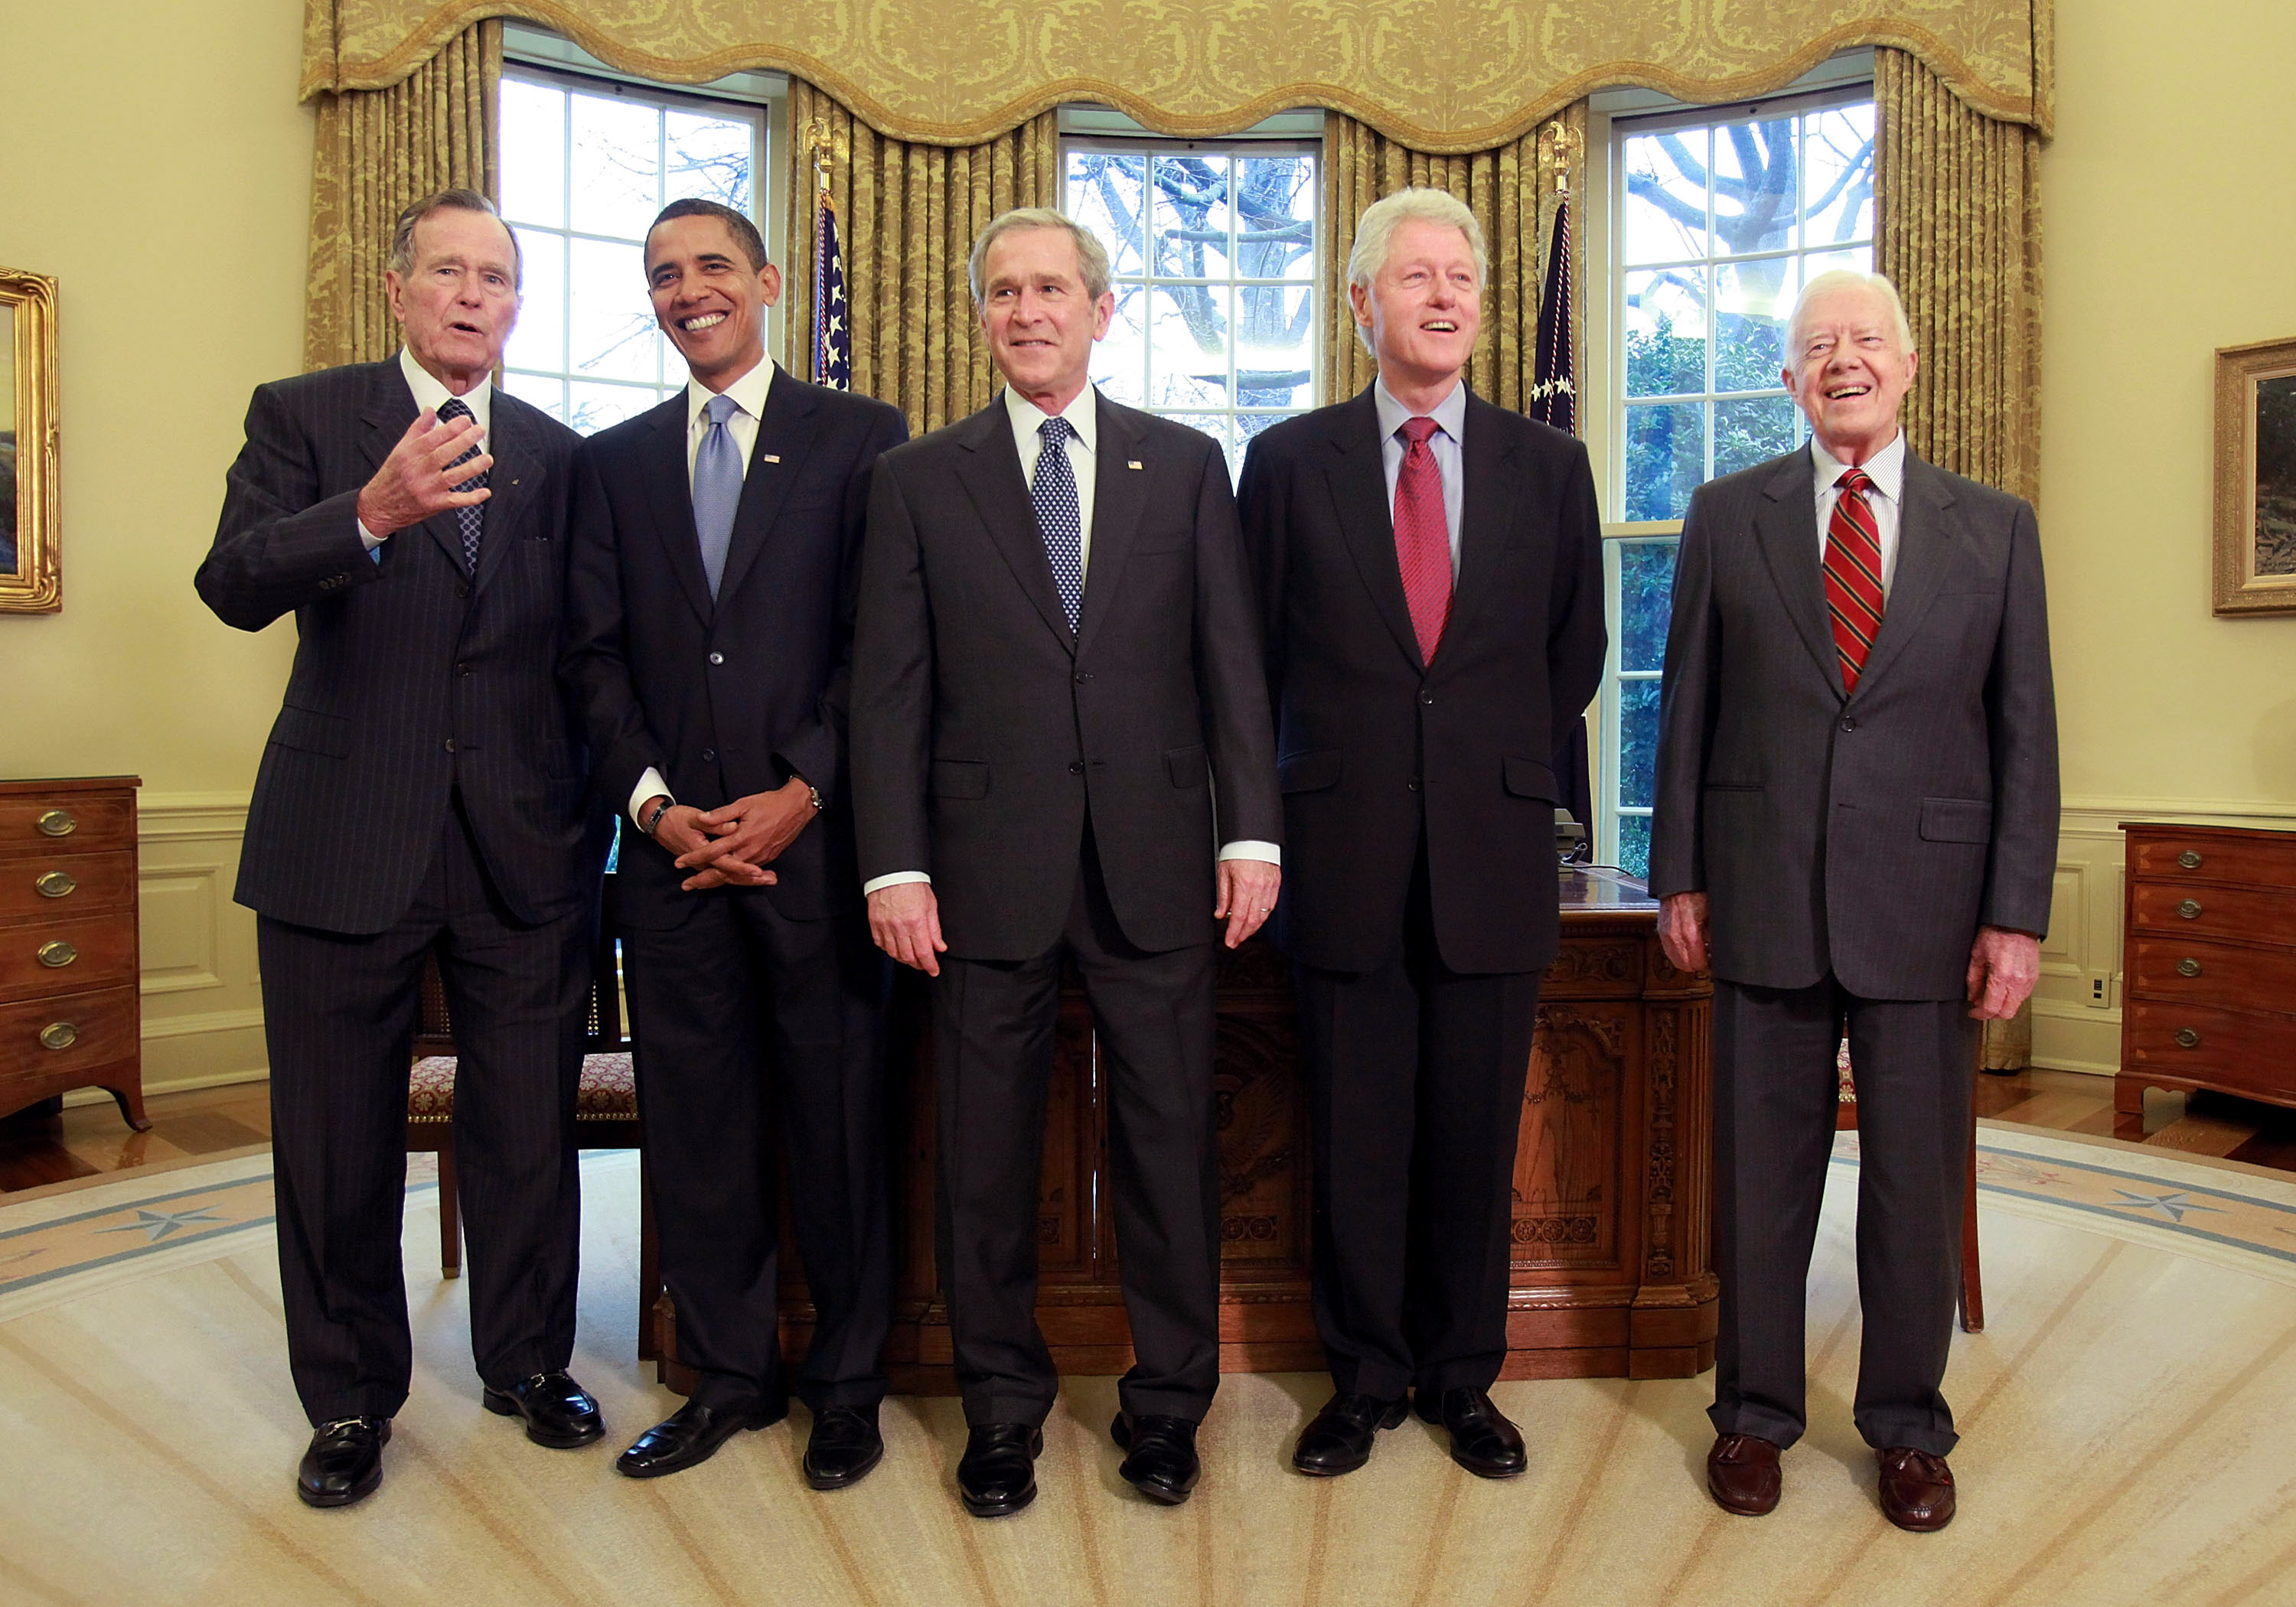 Male presidents